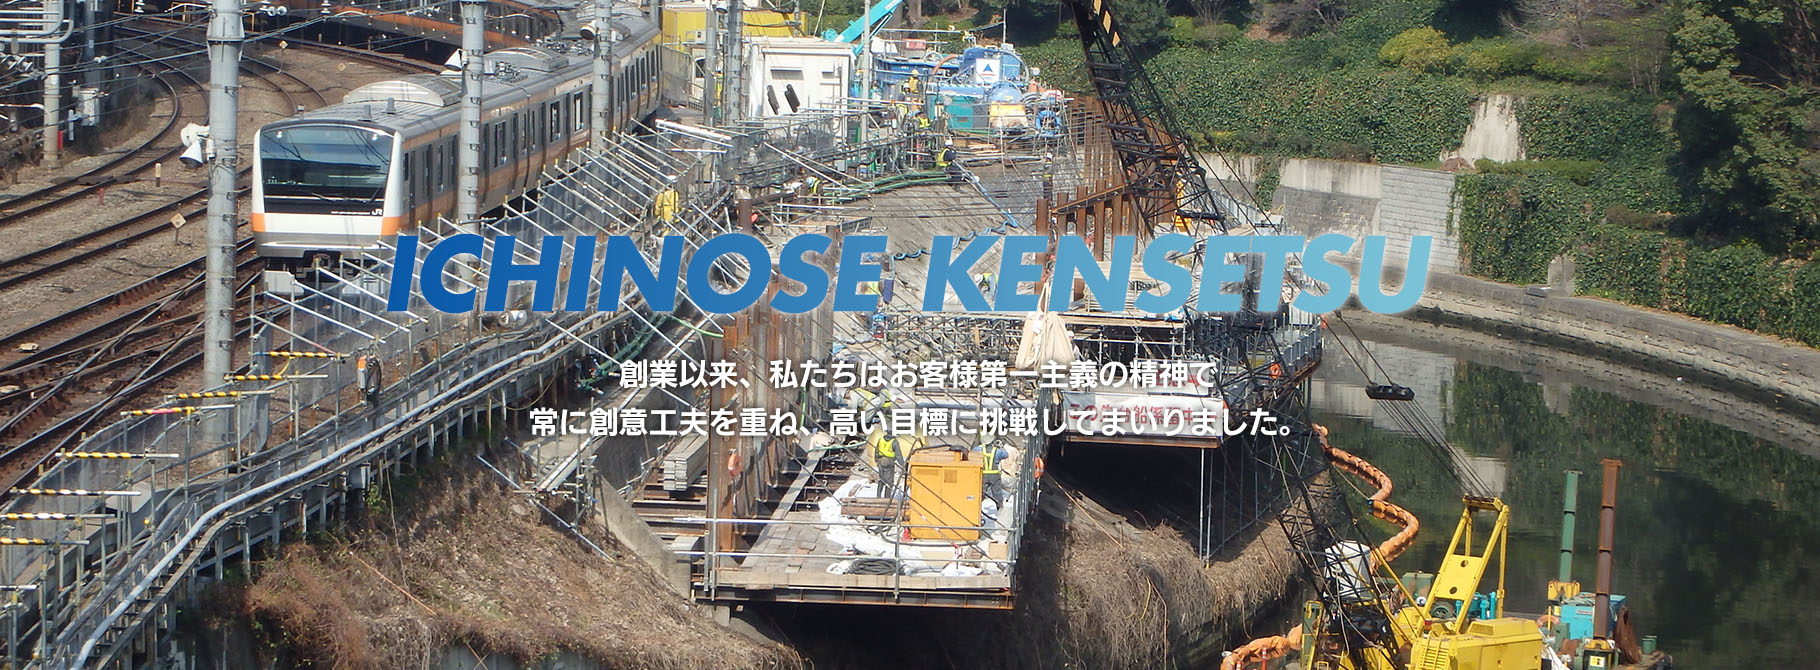 ICHINOSE KENSETSU 創業以来、私たちはお客様第一主義の精神で常に創意工夫を重ね、高い目標に挑戦してまいりました。